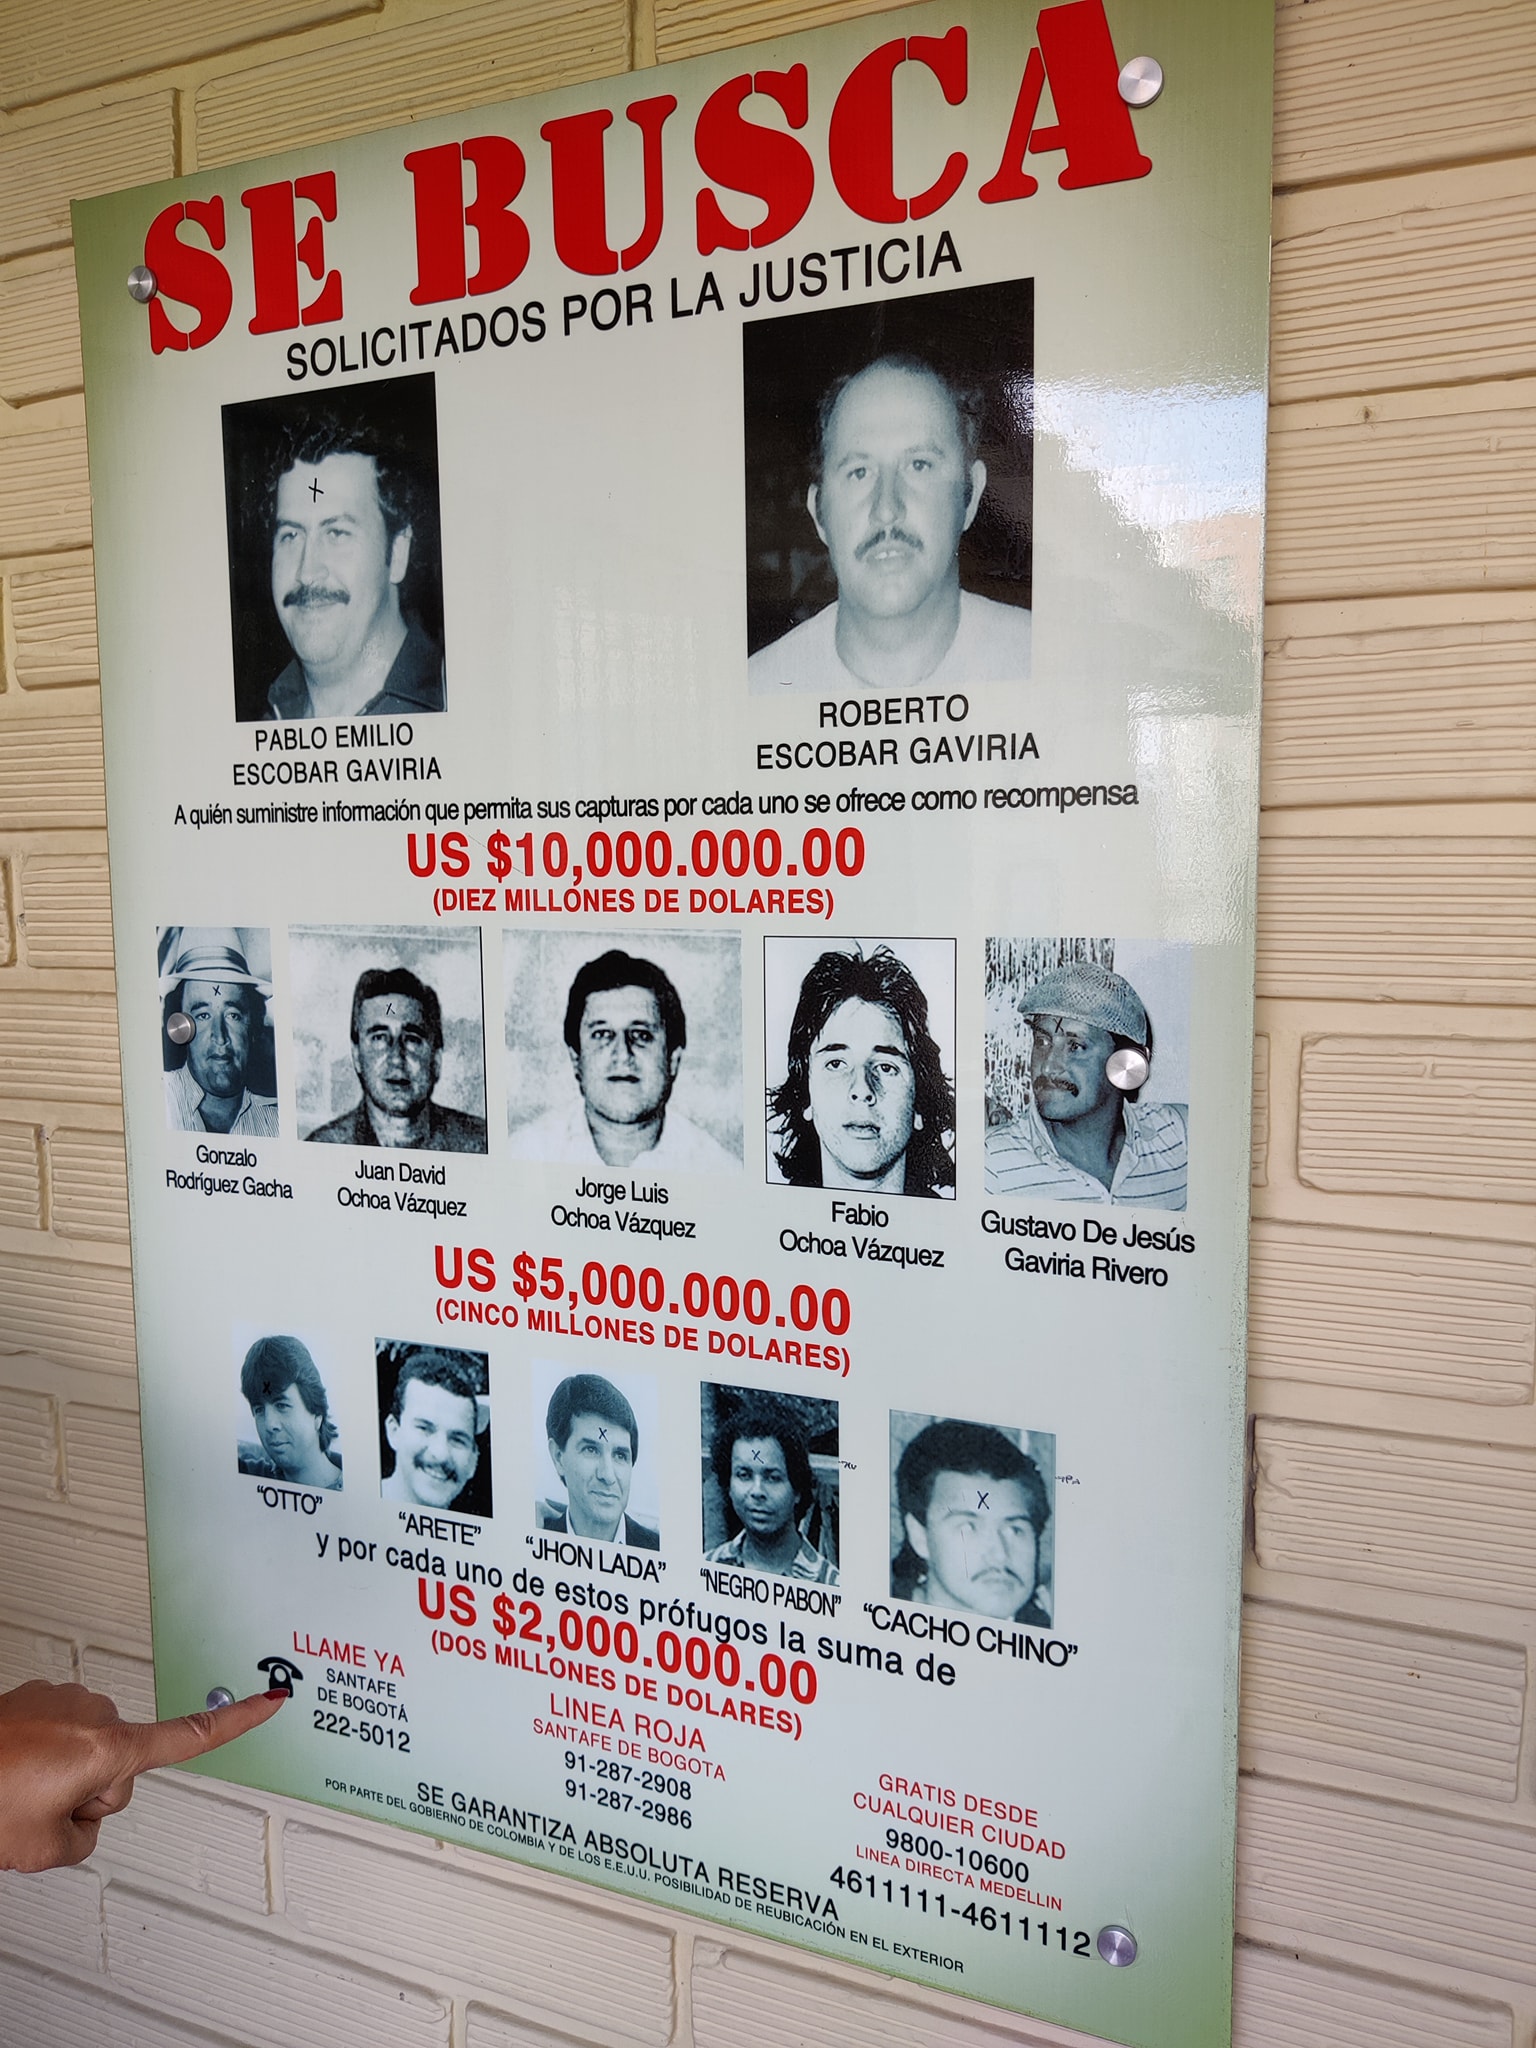 Времена наркобаронов и Эскобара в Колумбии прошли